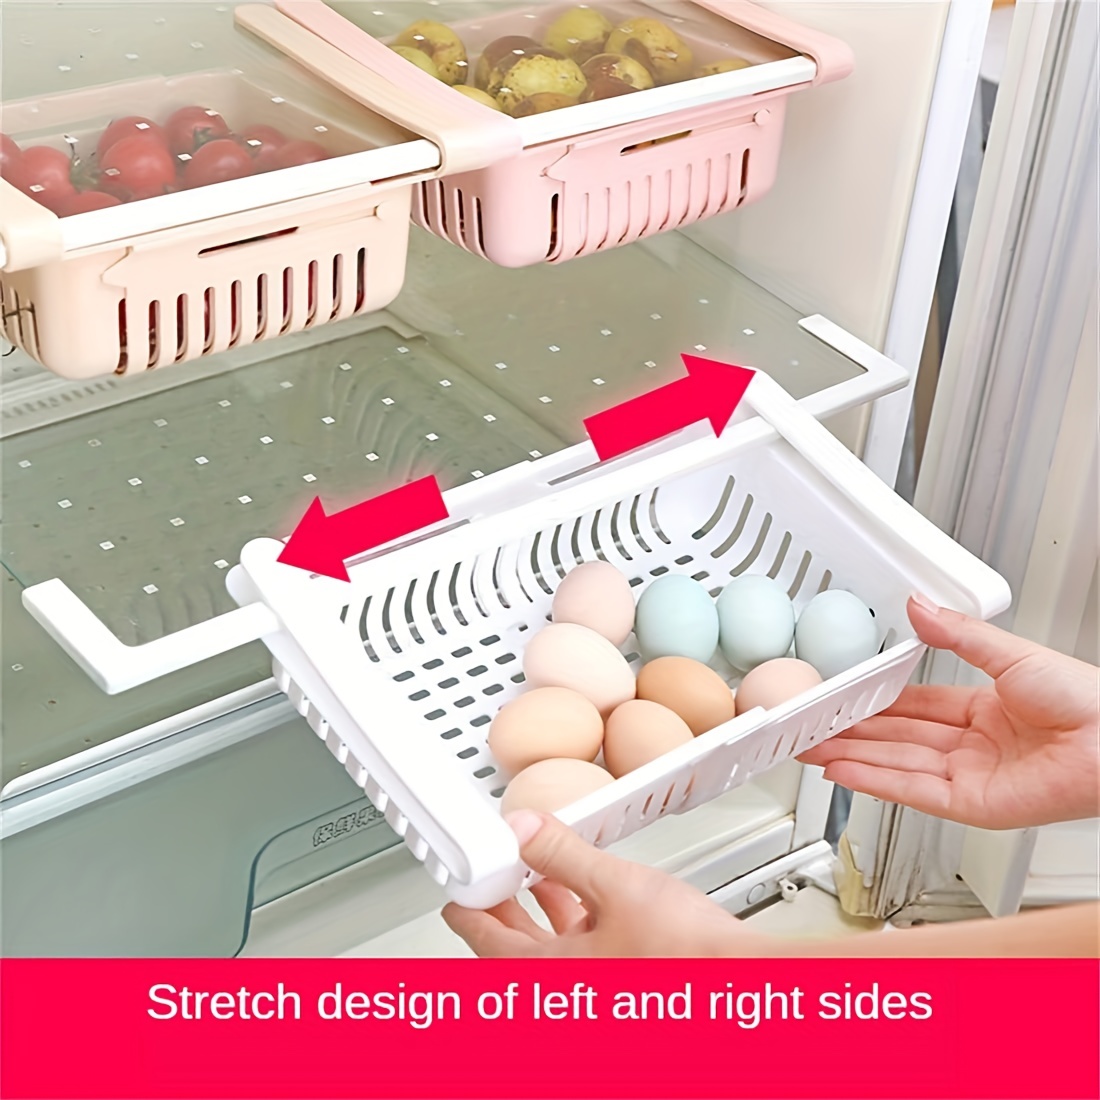 Refrigerator Crisper Bins Vegetable Drawer - Affordable RVing